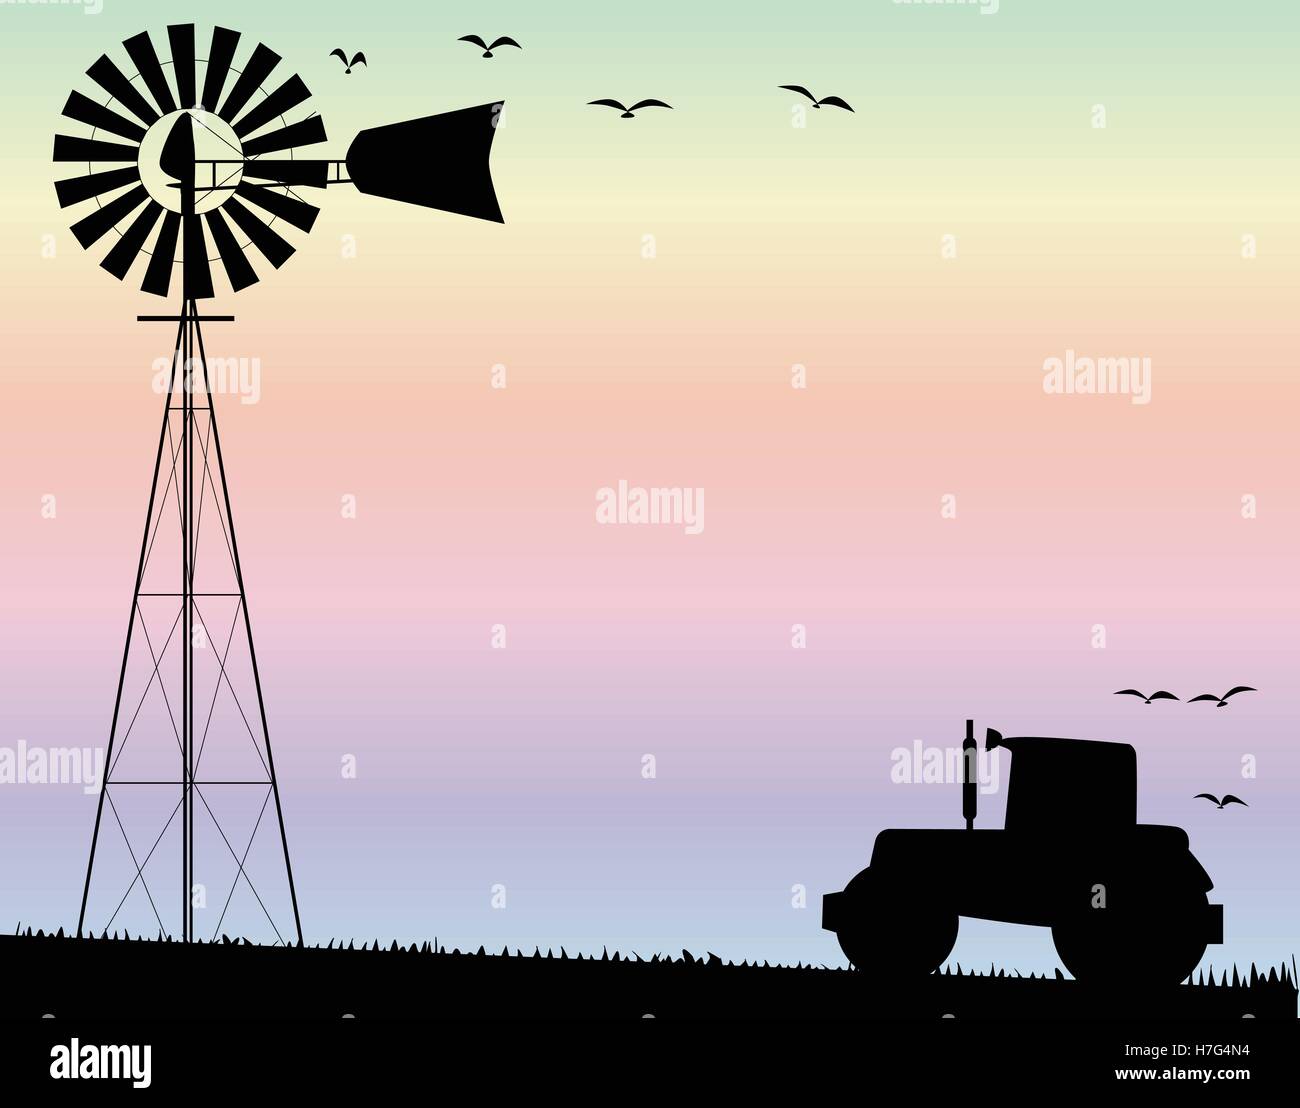 Un petit moulin à vent de la pompe à eau et un tracteur agricole qui se profile par sky Illustration de Vecteur